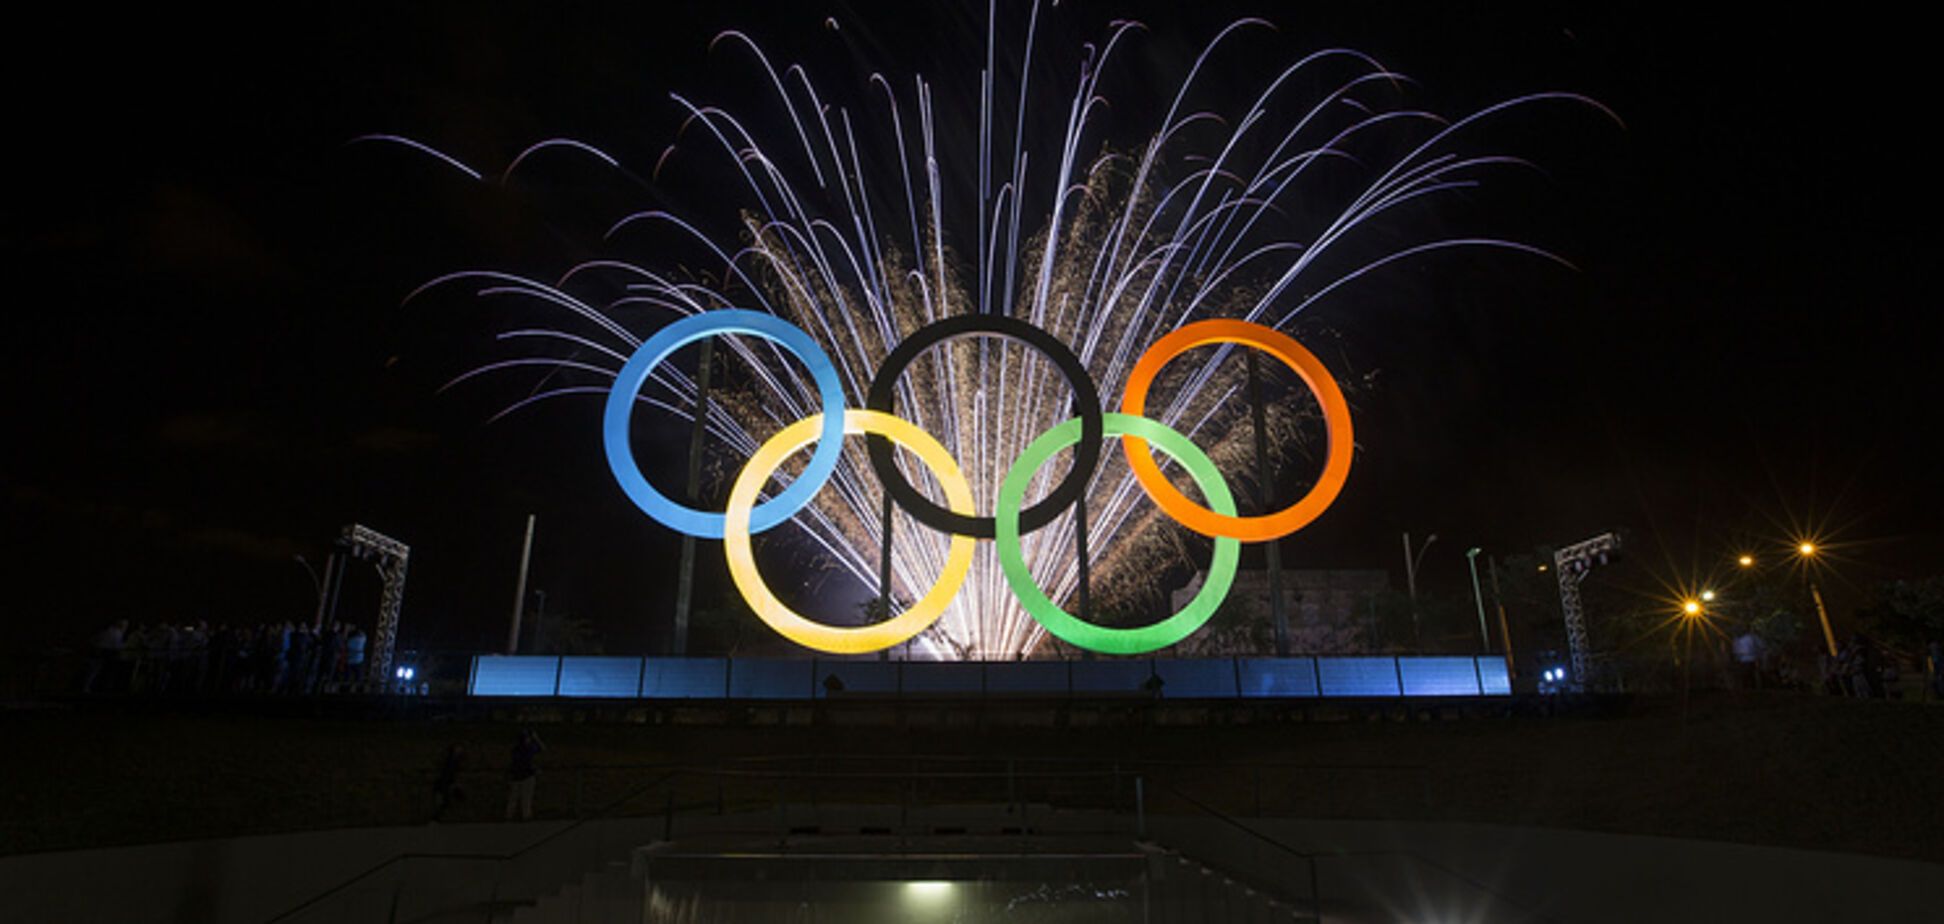 Понеслась! Олимпиада-2018: где смотреть церемонию открытия - расписание трансляций